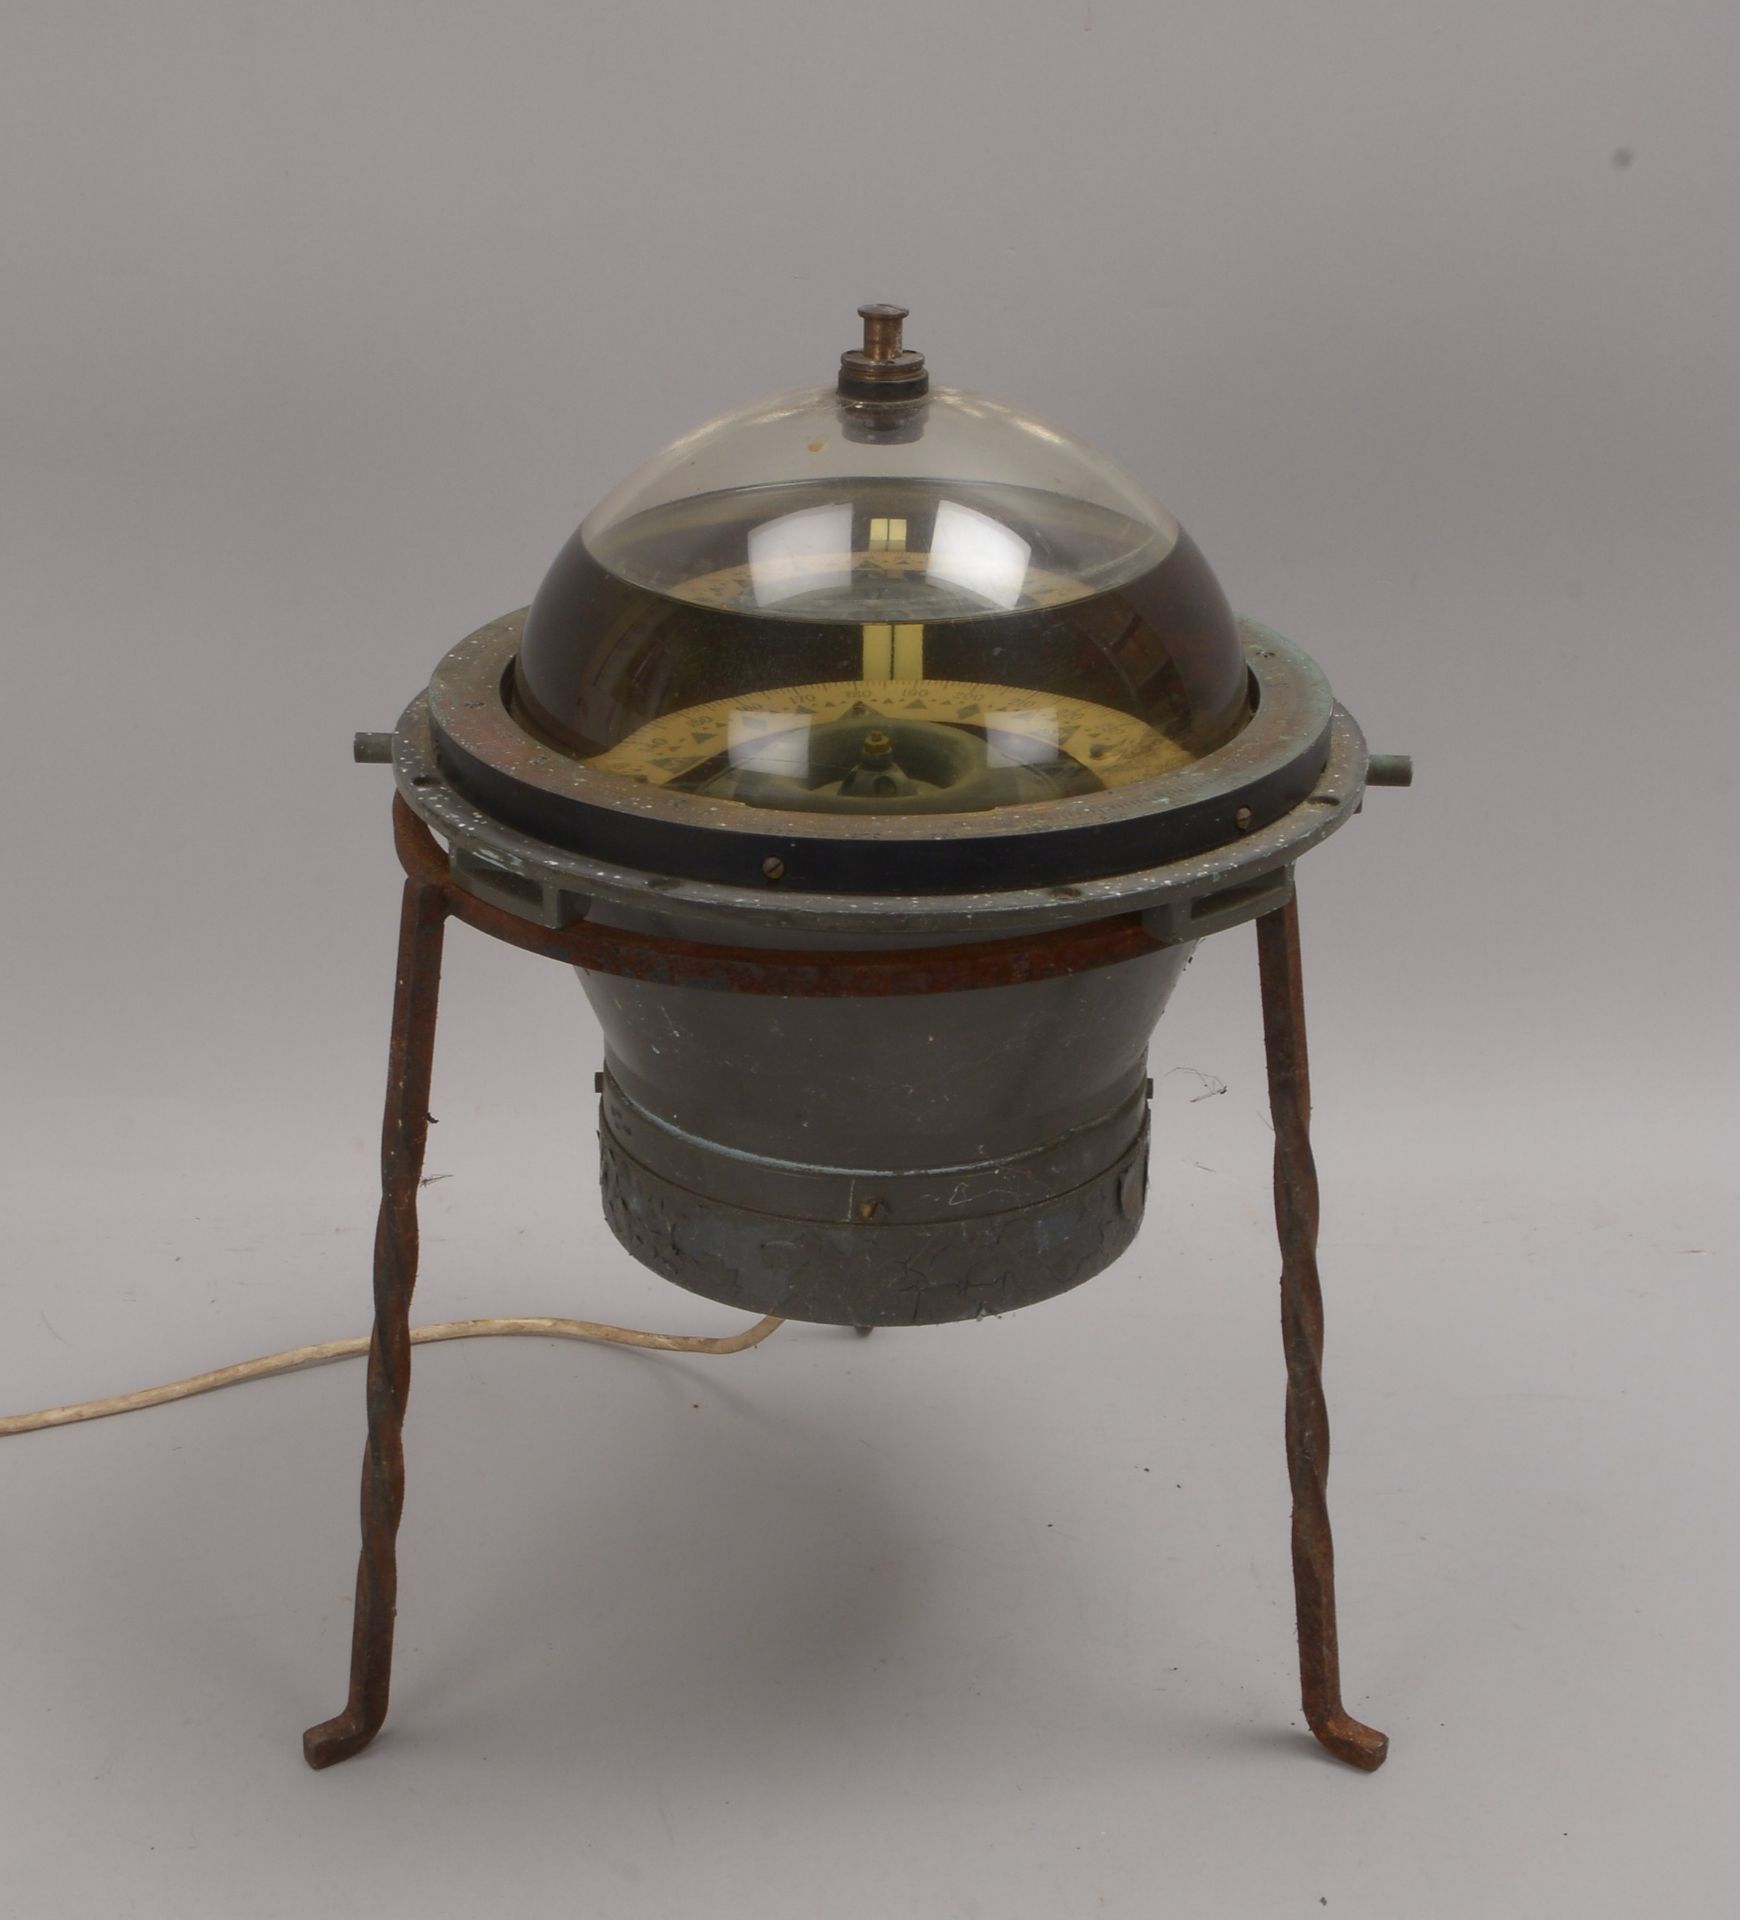 Schiffskompass (C. Plath/HH), auf Eisengestell, mit Beleuchtung; Höhe 45 cm, Ø 30 cm